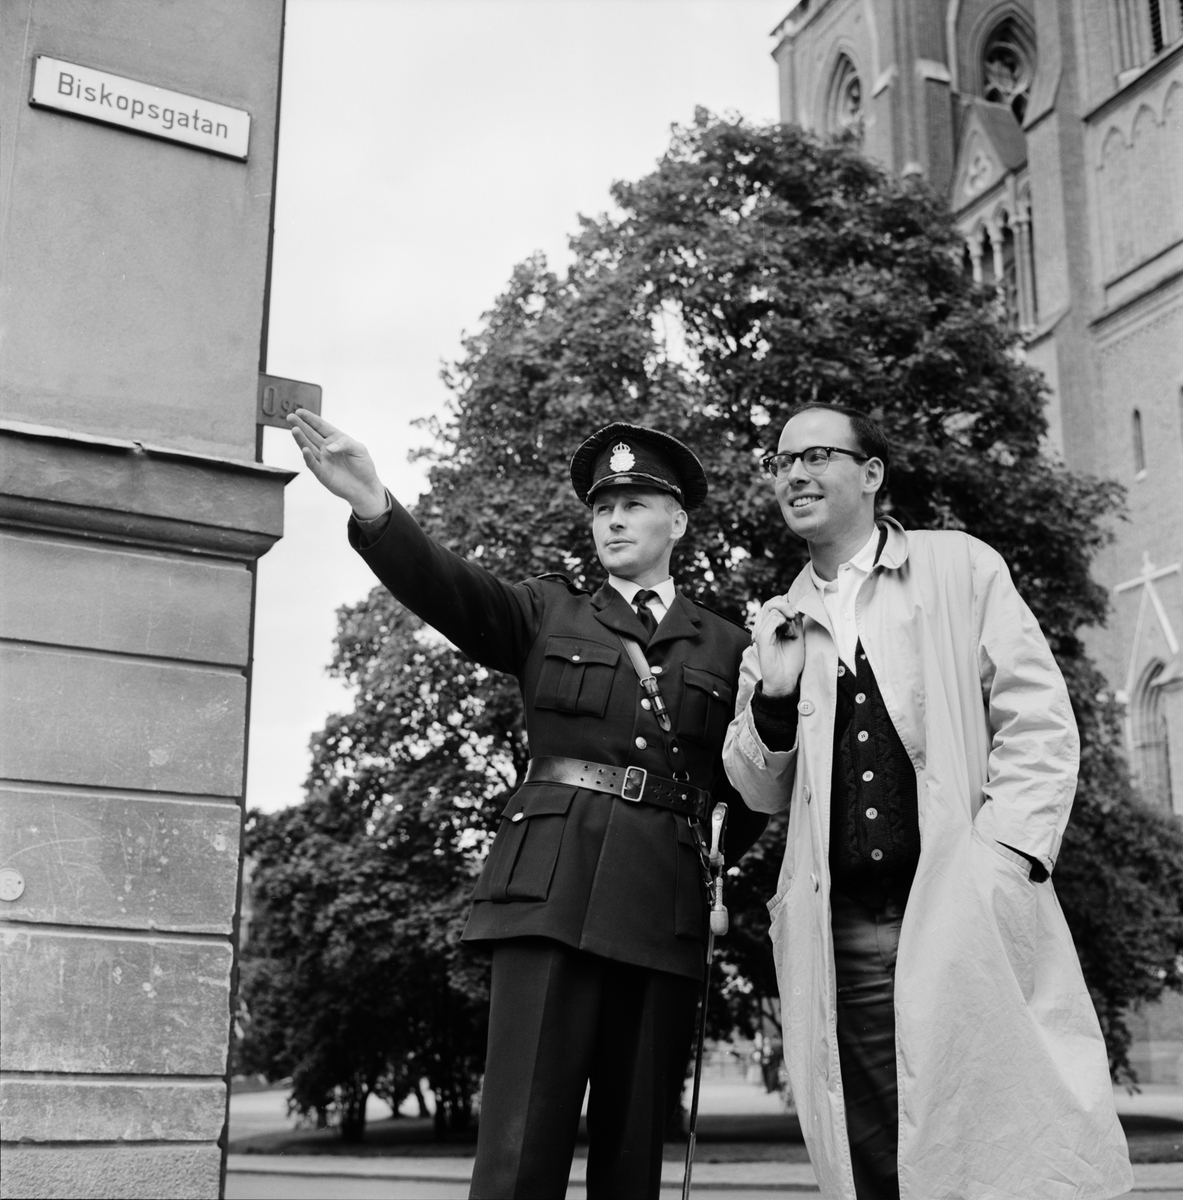 Turistnämnden - "färre utlänningar besöker Uppsala", Uppsala 1962